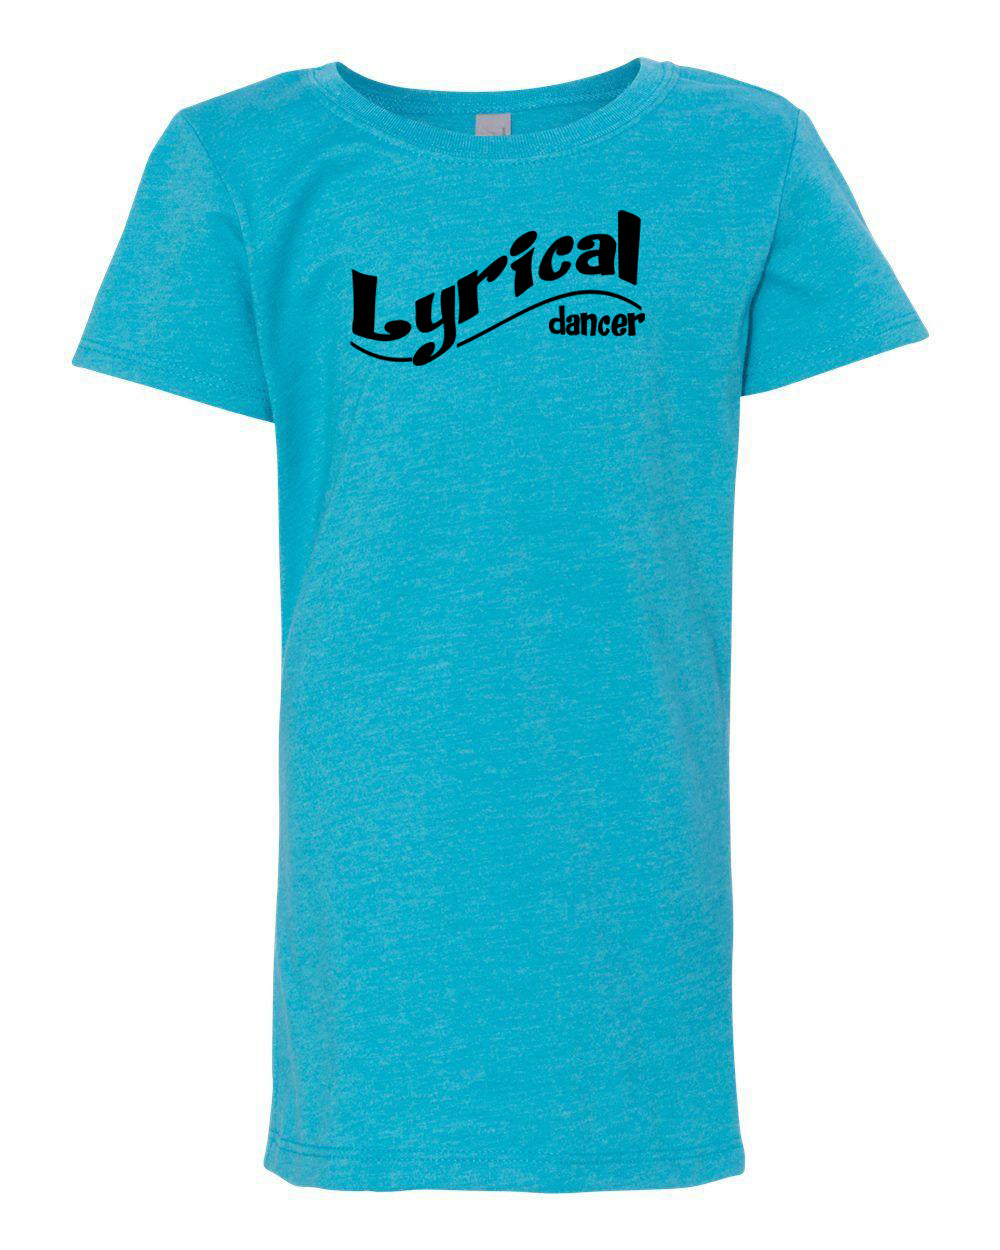 Lyrical Dancer Girls T-Shirt Ocean Blue